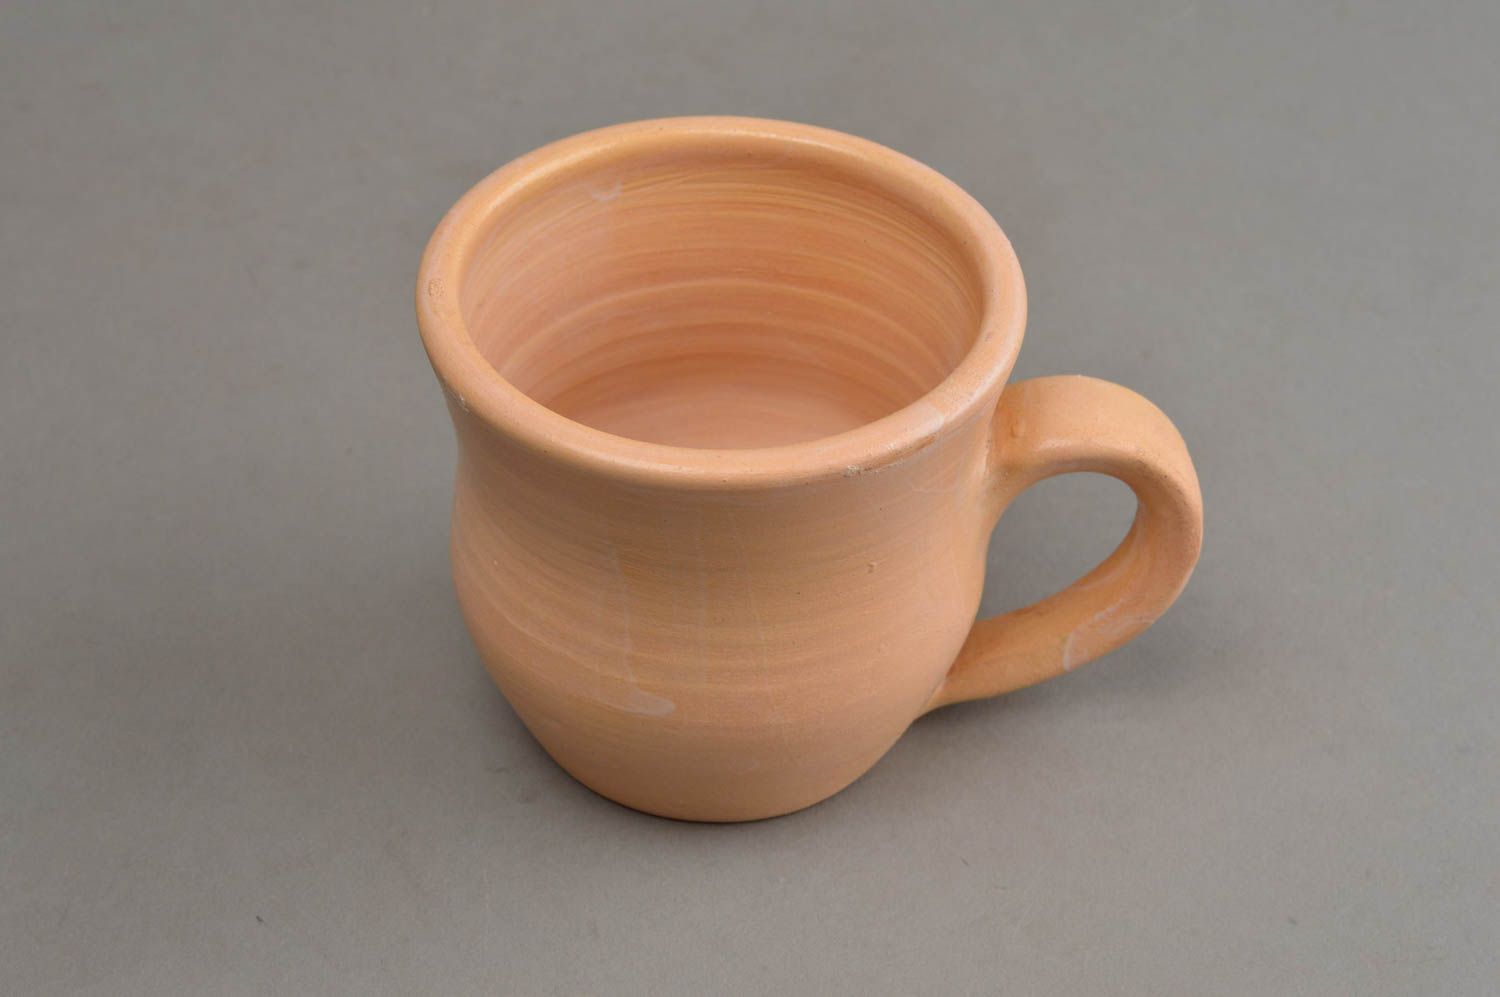 Глиняная чашка небольшая бежевая глазурованная 200 мл оригинальная ручной работы фото 3